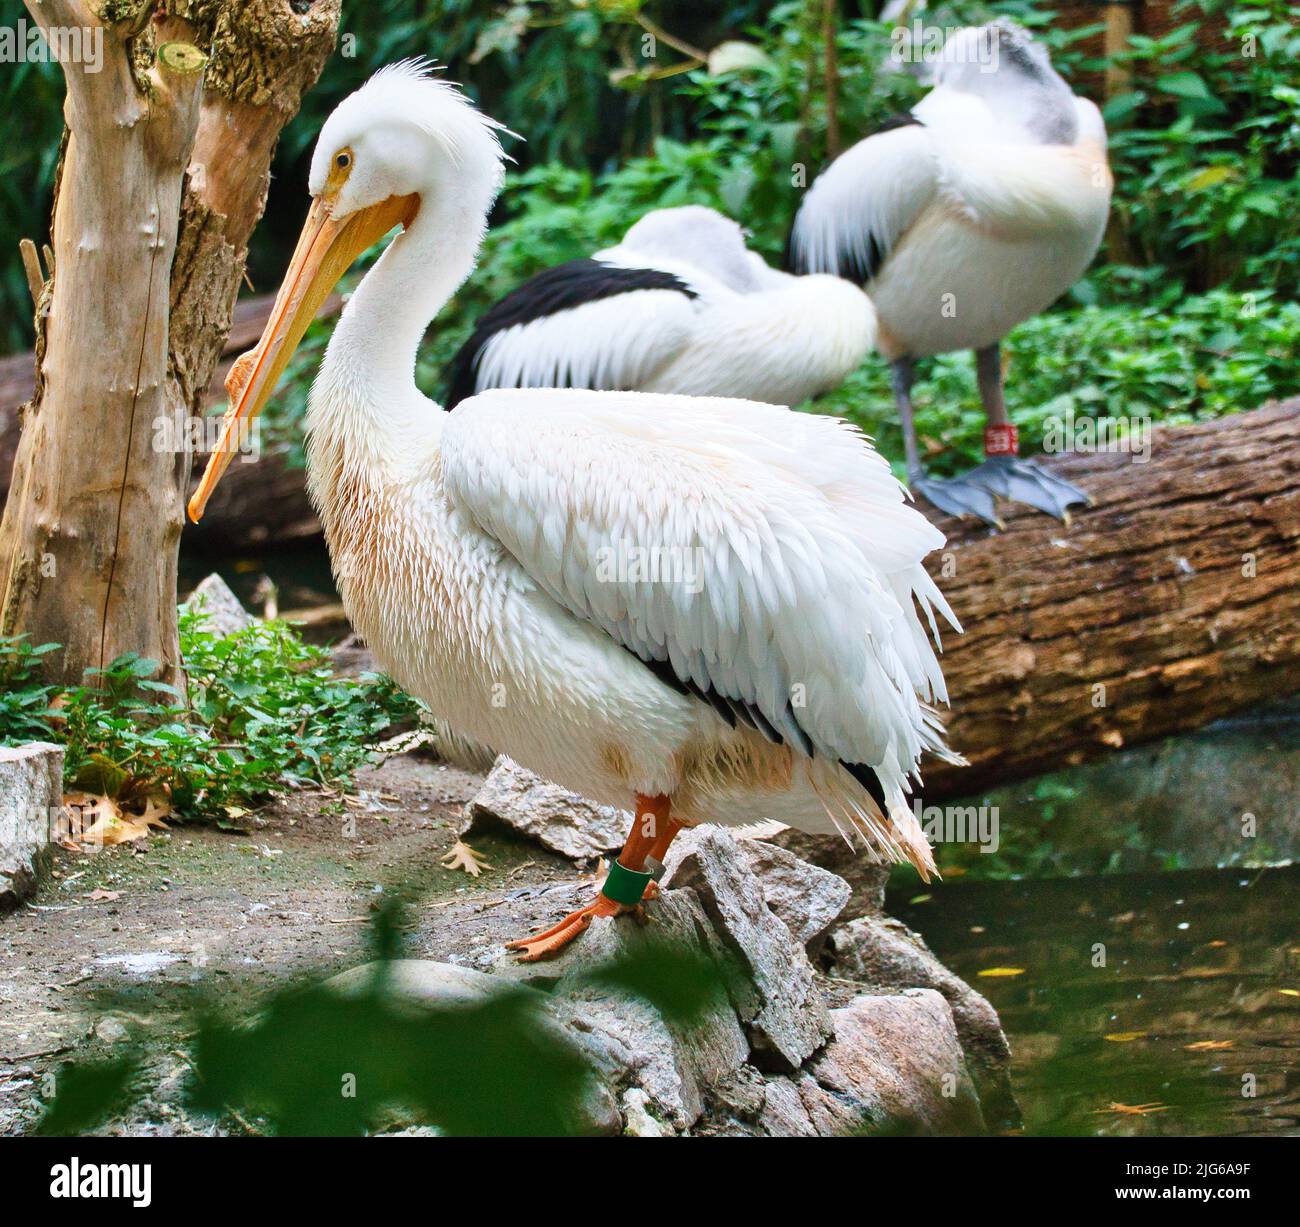 Pelican en retrato. Plumaje blanco, pico grande, en un ave marina grande. Foto de animales Foto de stock